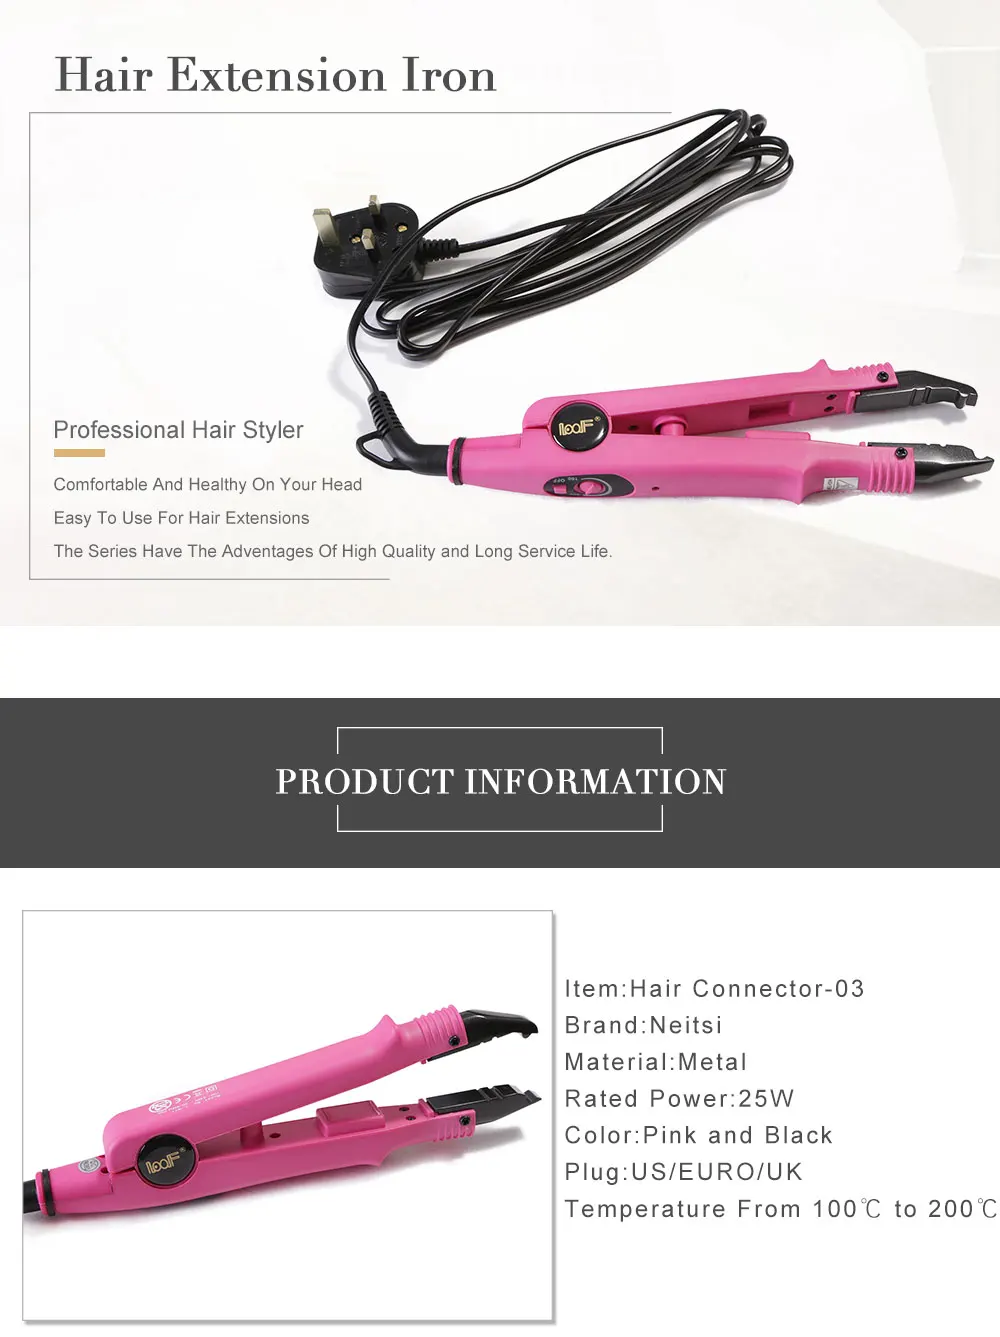 Neitsi Professional UK Plug коннектор для волос Fusion сердце Утюг Инструменты для укладки волос Постоянное Наращивание волос